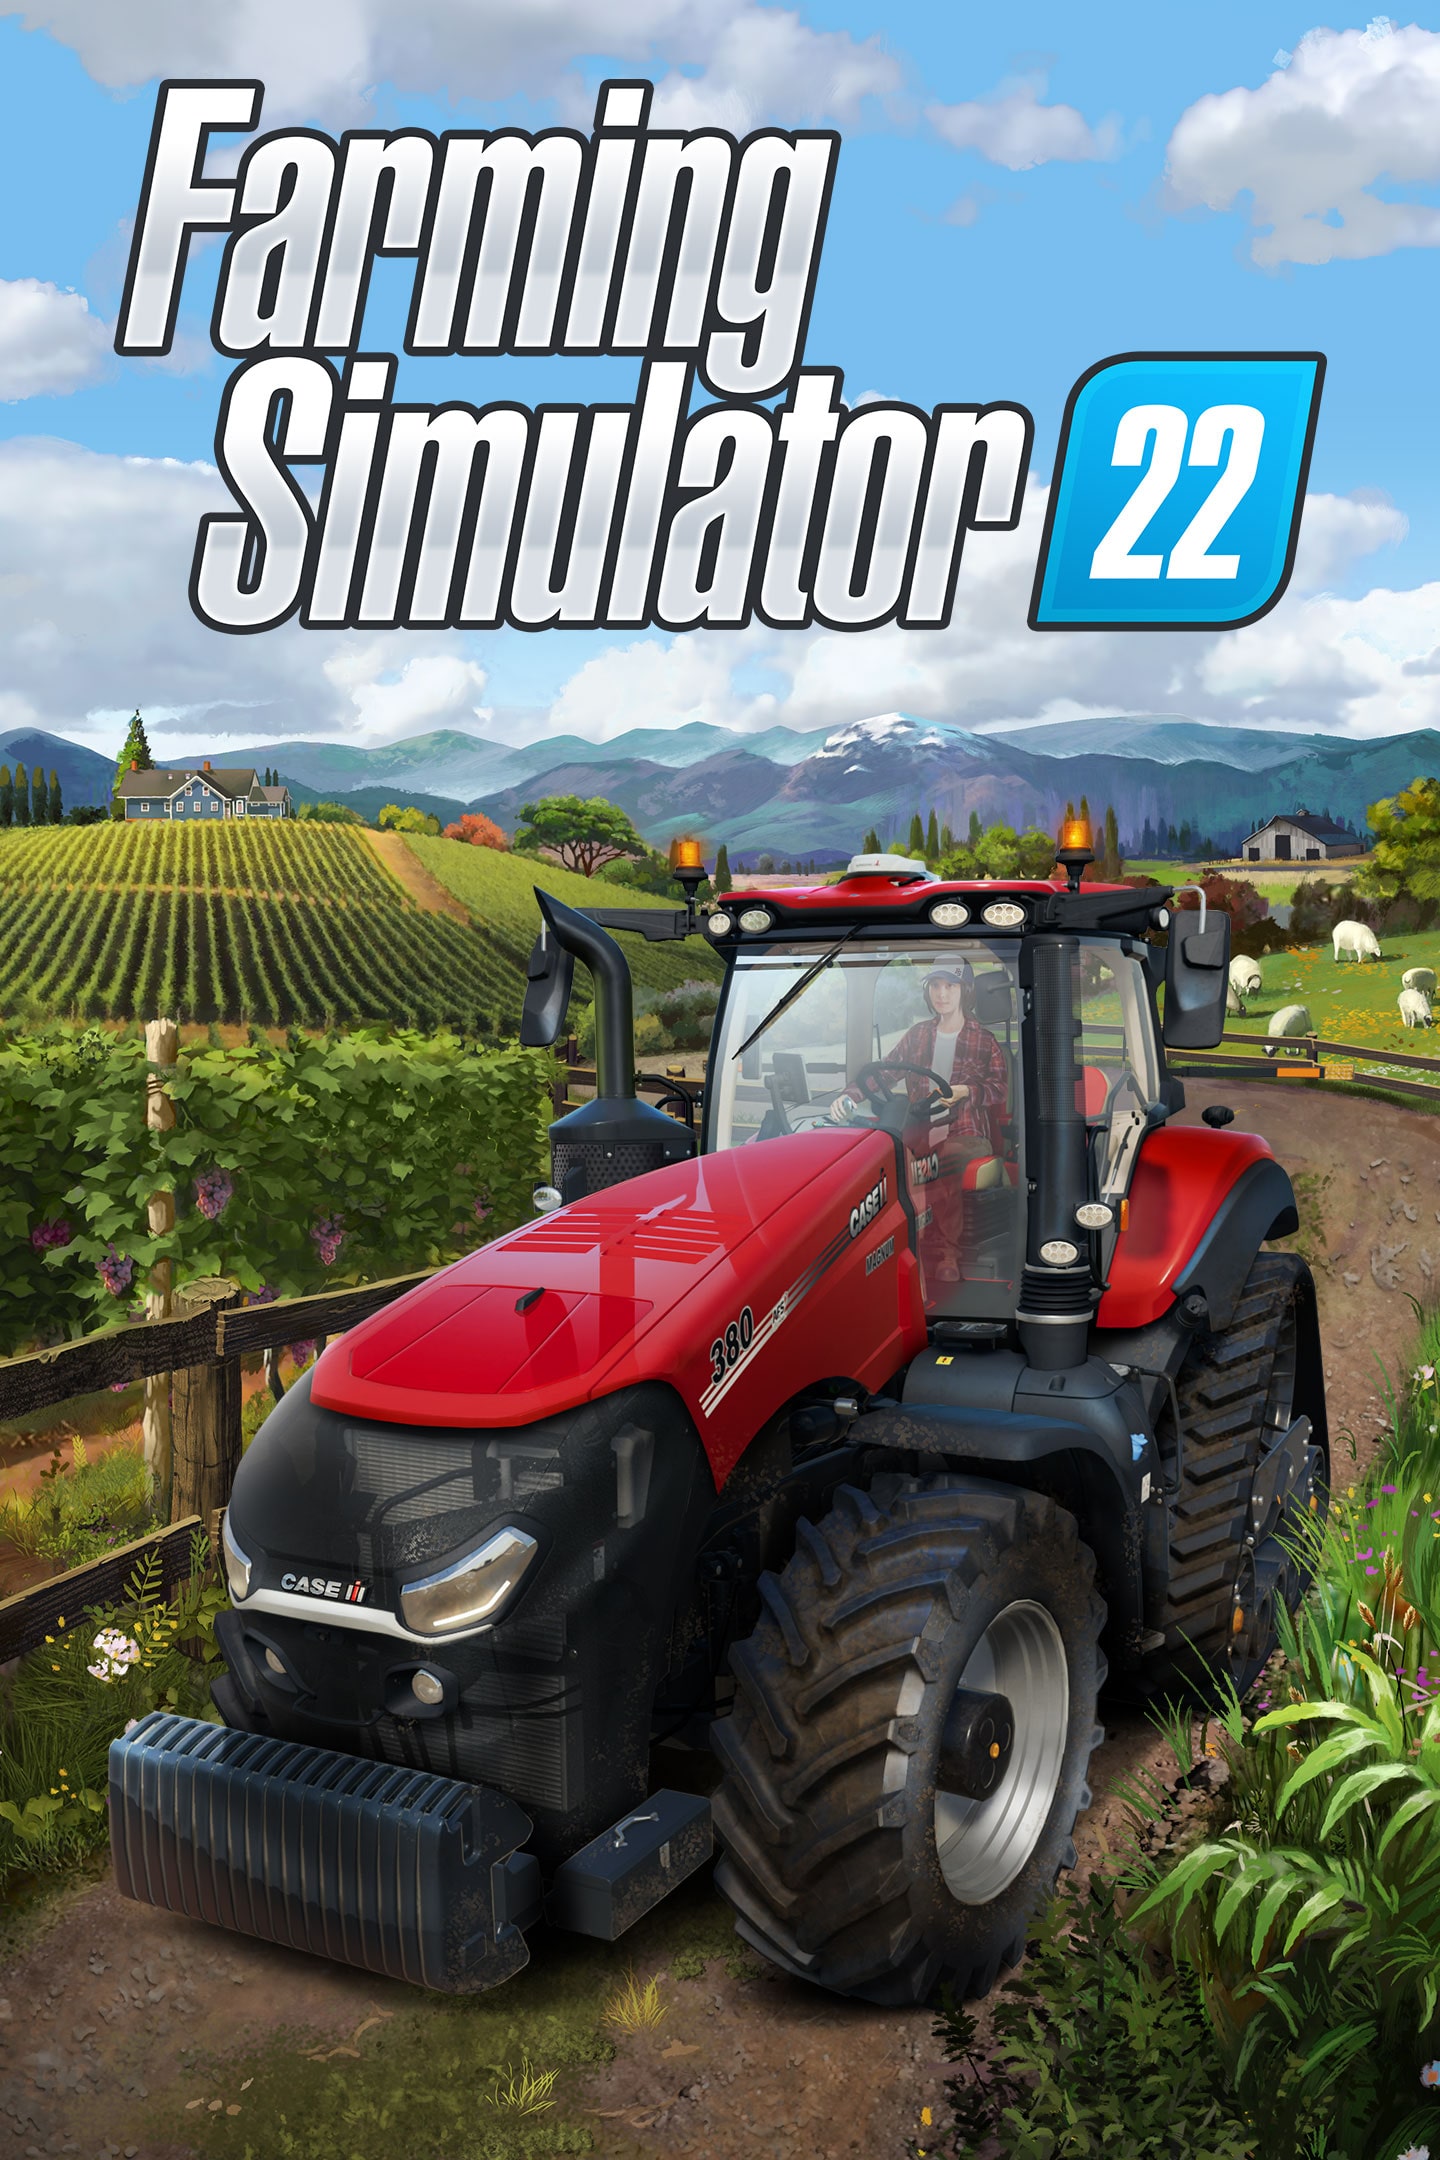 Farming Simulator 22 Platinum Expansion - Steam Version